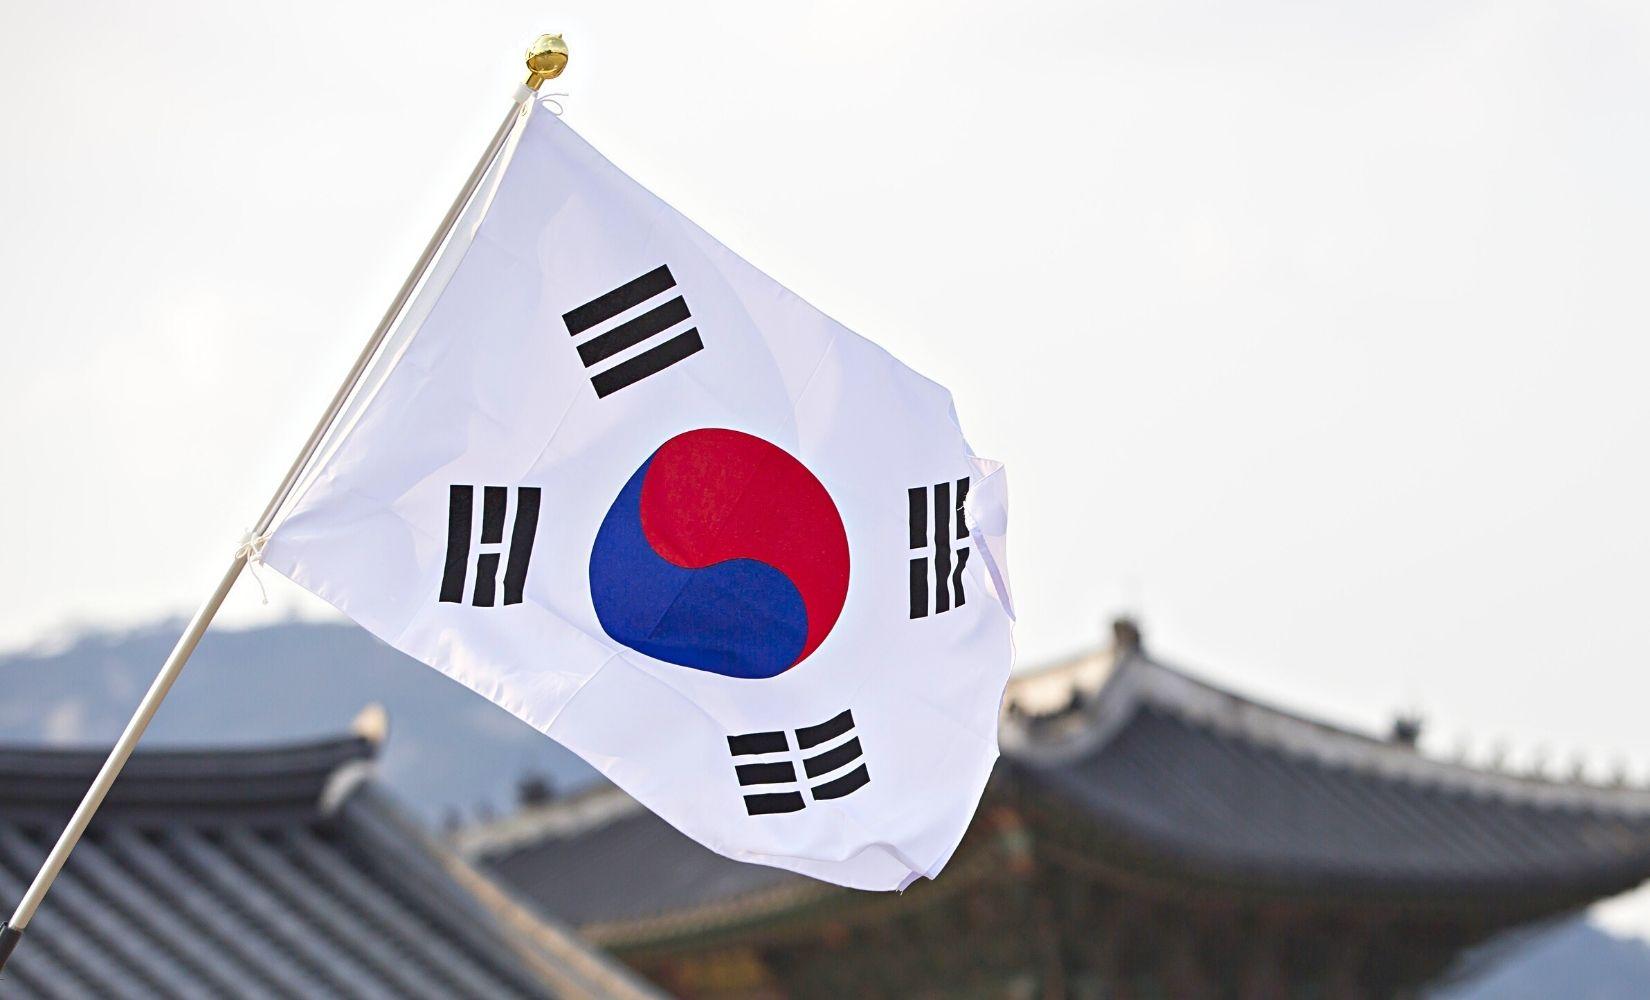 Taegeukgi: Taegeukgi là biểu tượng đặc trưng của Hàn Quốc, mang ý nghĩa thể hiện tinh thần độc lập, tự do và đoàn kết của dân tộc. Với thiết kế độc đáo và sắc màu tươi sáng, lá cờ này đã trở thành biểu tượng quen thuộc và được ưa chuộng trên toàn thế giới. Hãy khám phá hình ảnh liên quan đến Taegeukgi để tìm hiểu thêm về ý nghĩa và giá trị của nó nhé.